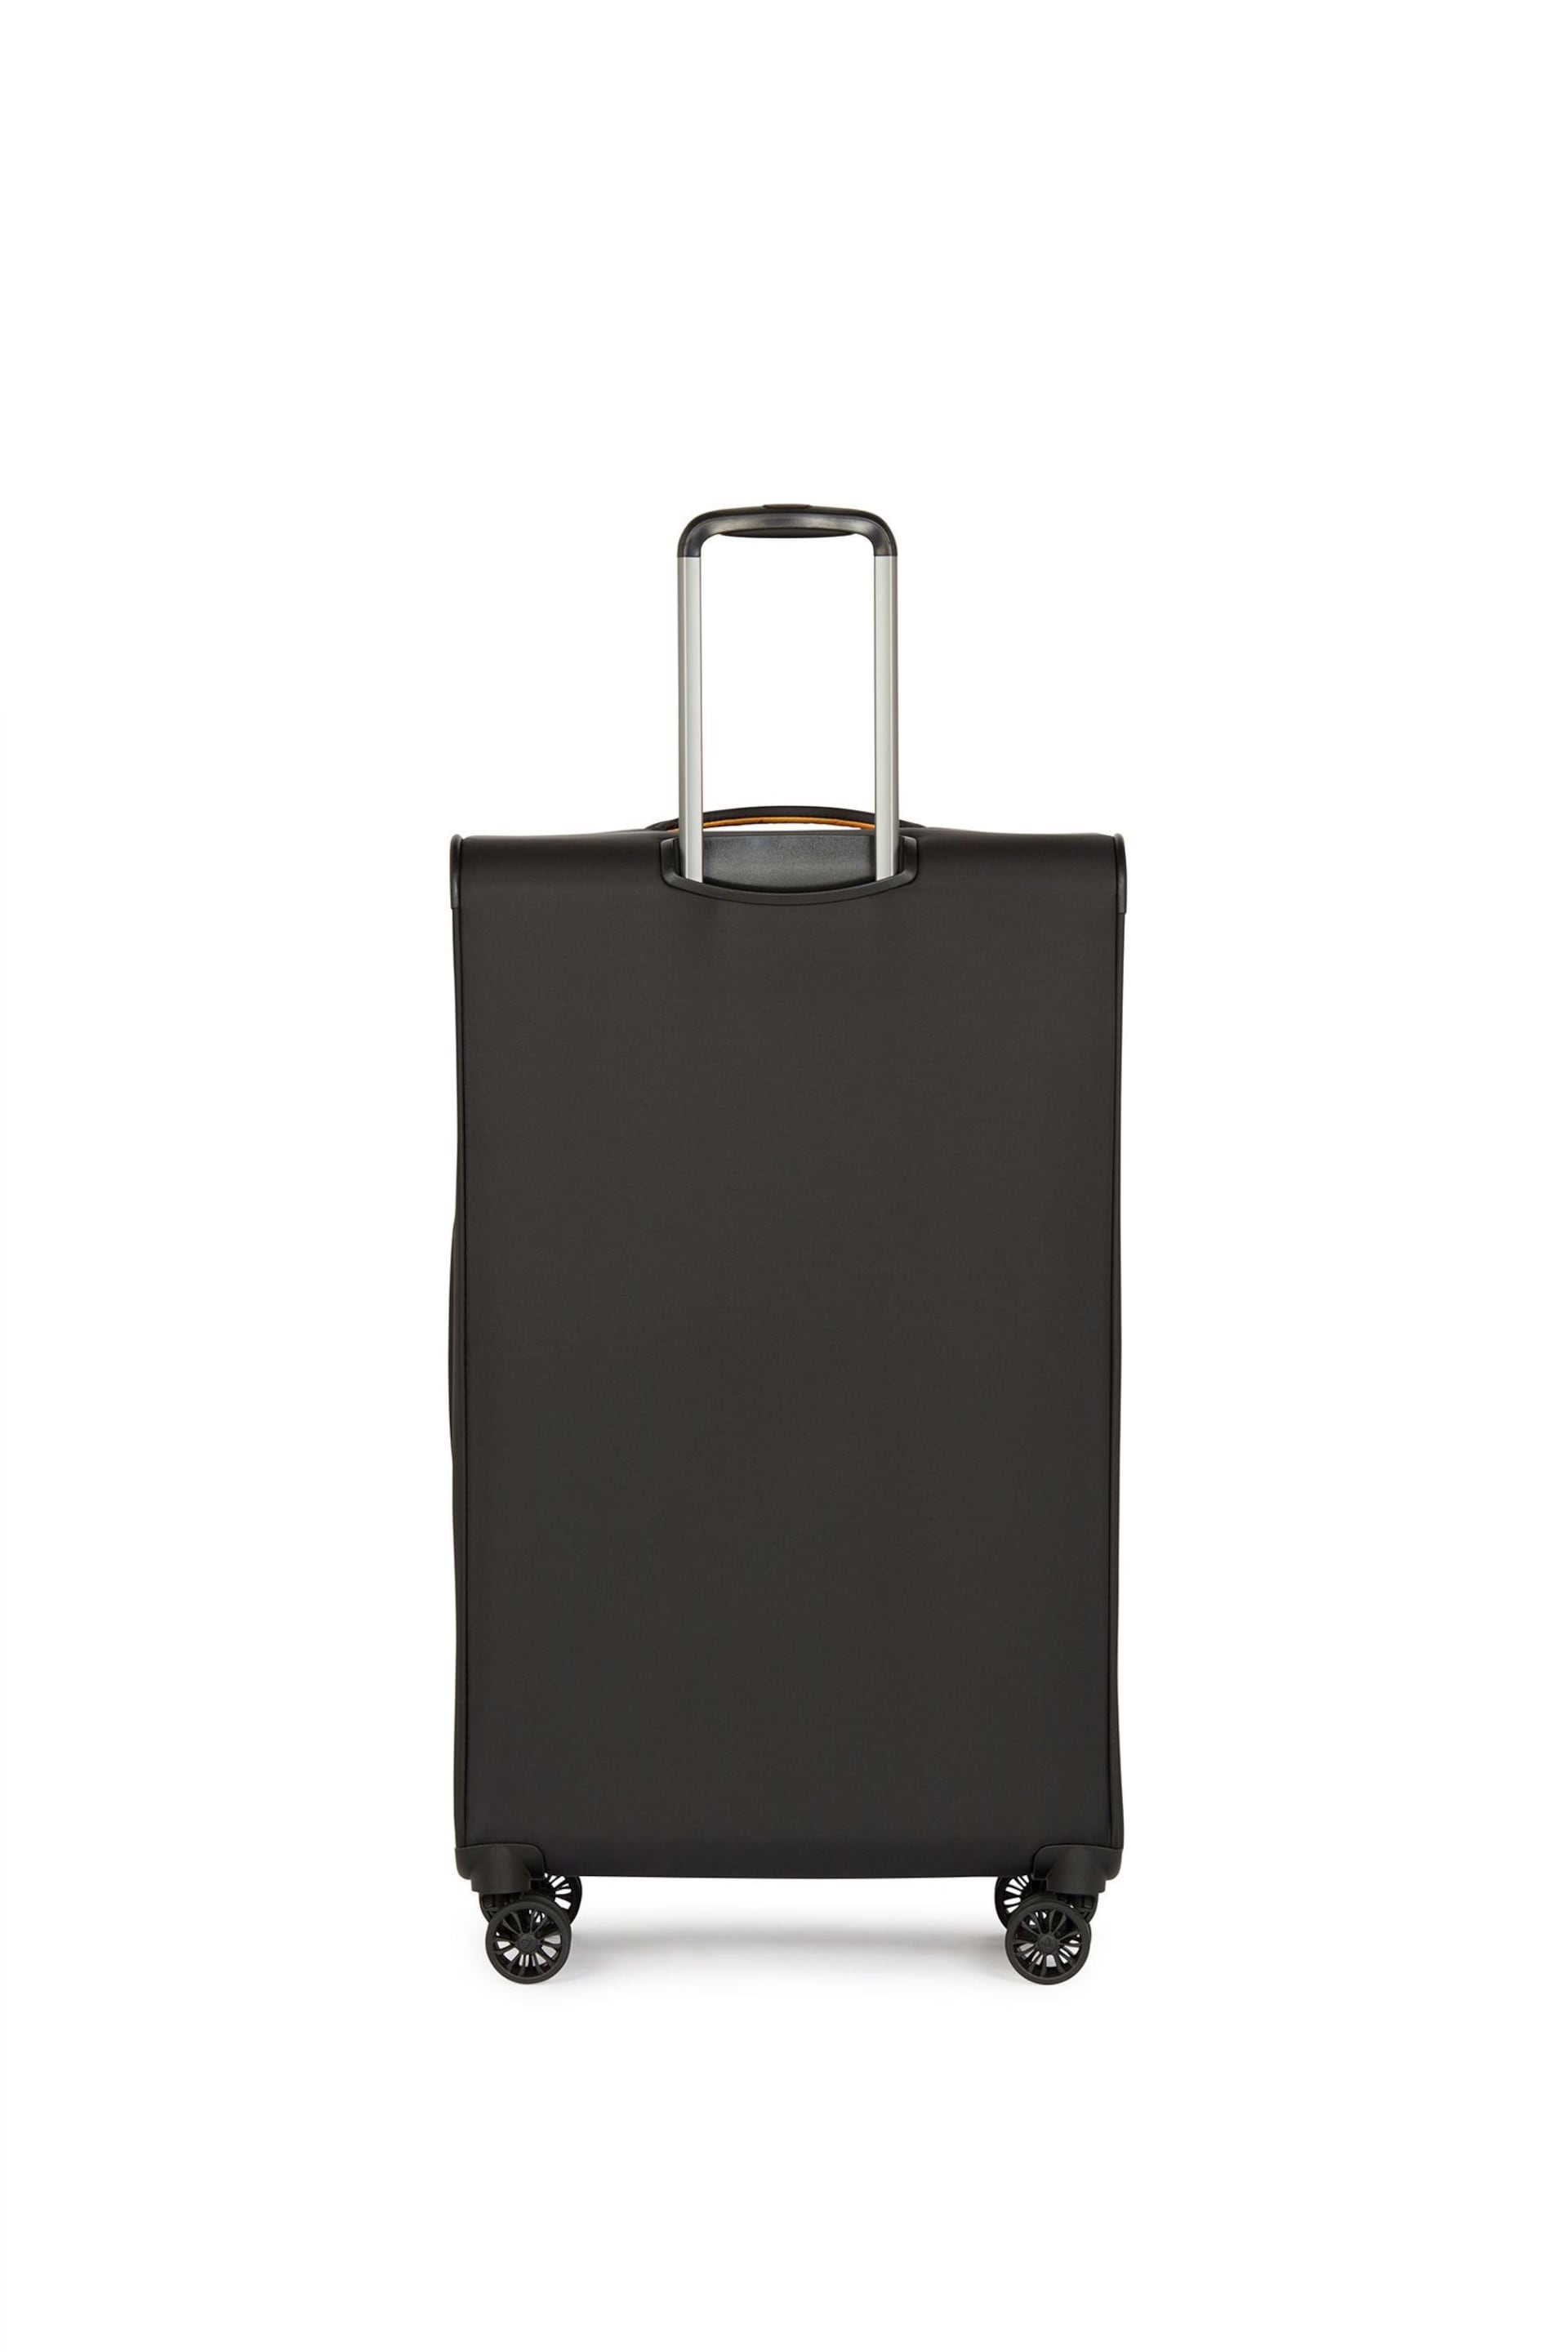 Antler Brixham Large Black Suitcase - Image 2 of 6